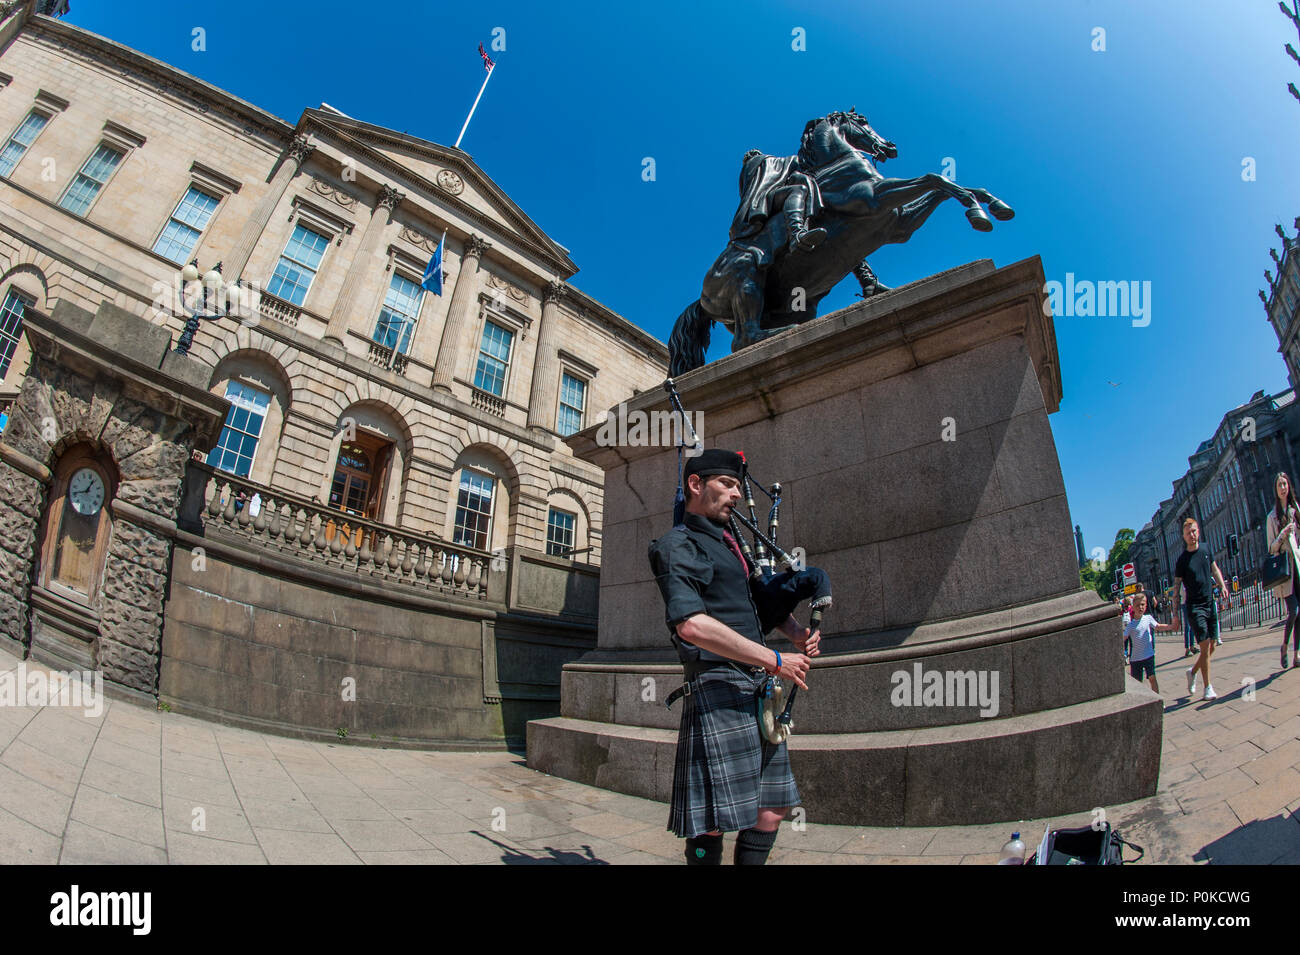 Eine Piper von der Statue des Herzogs von Wellington und der Turm des Balmoral Hotel, Edinburgh, Schottland, Großbritannien Stockfoto